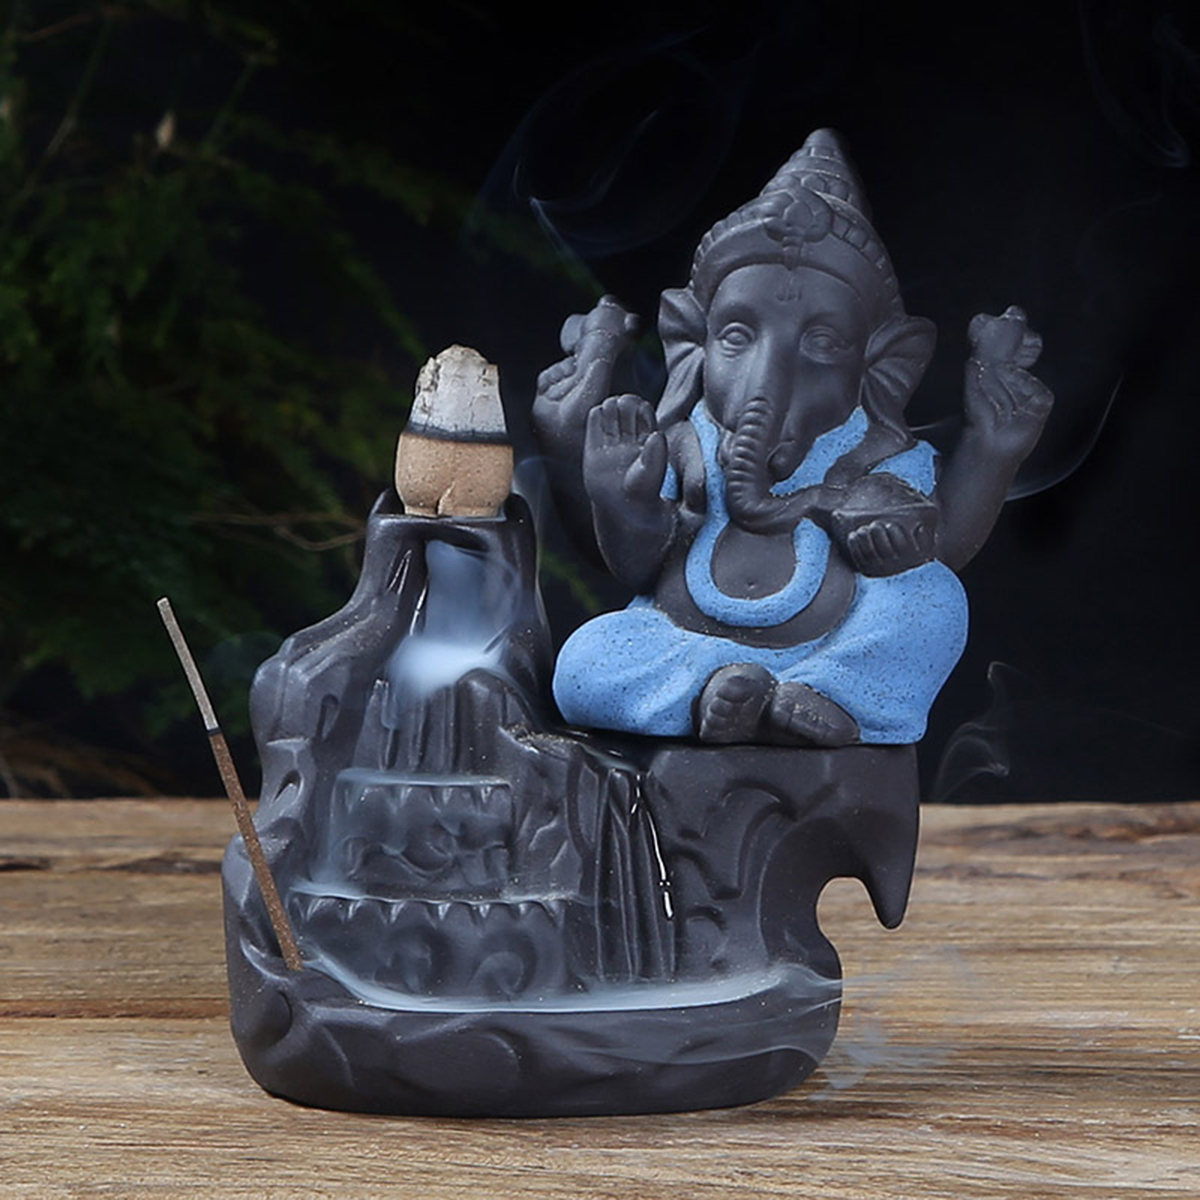 Elephant God Ganesha Backflow Incense Burner India Censer Holder Gifts Meditation Ornaments Home Office Decoration Crafts